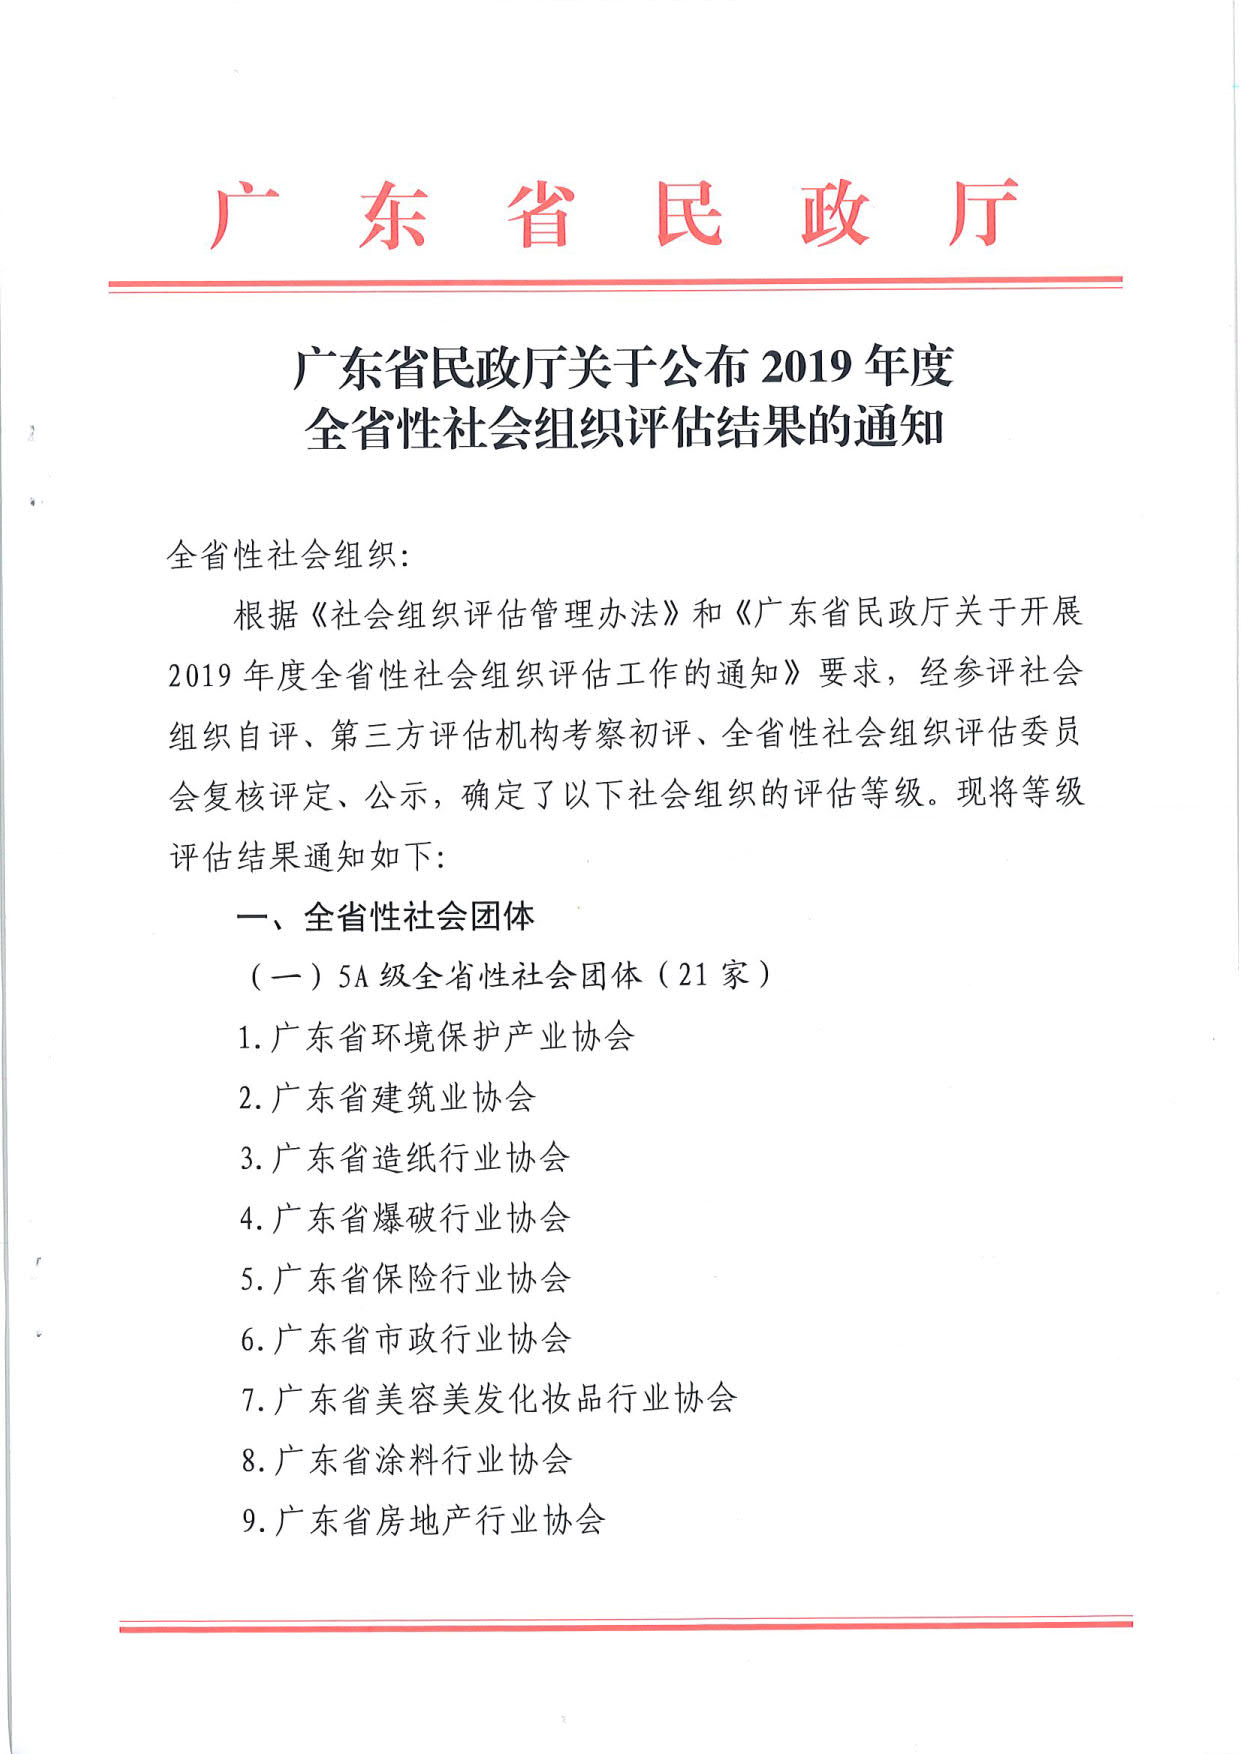 广东省民政厅关于公布2019年度全省性社会组织评估结果的通知_1.jpg